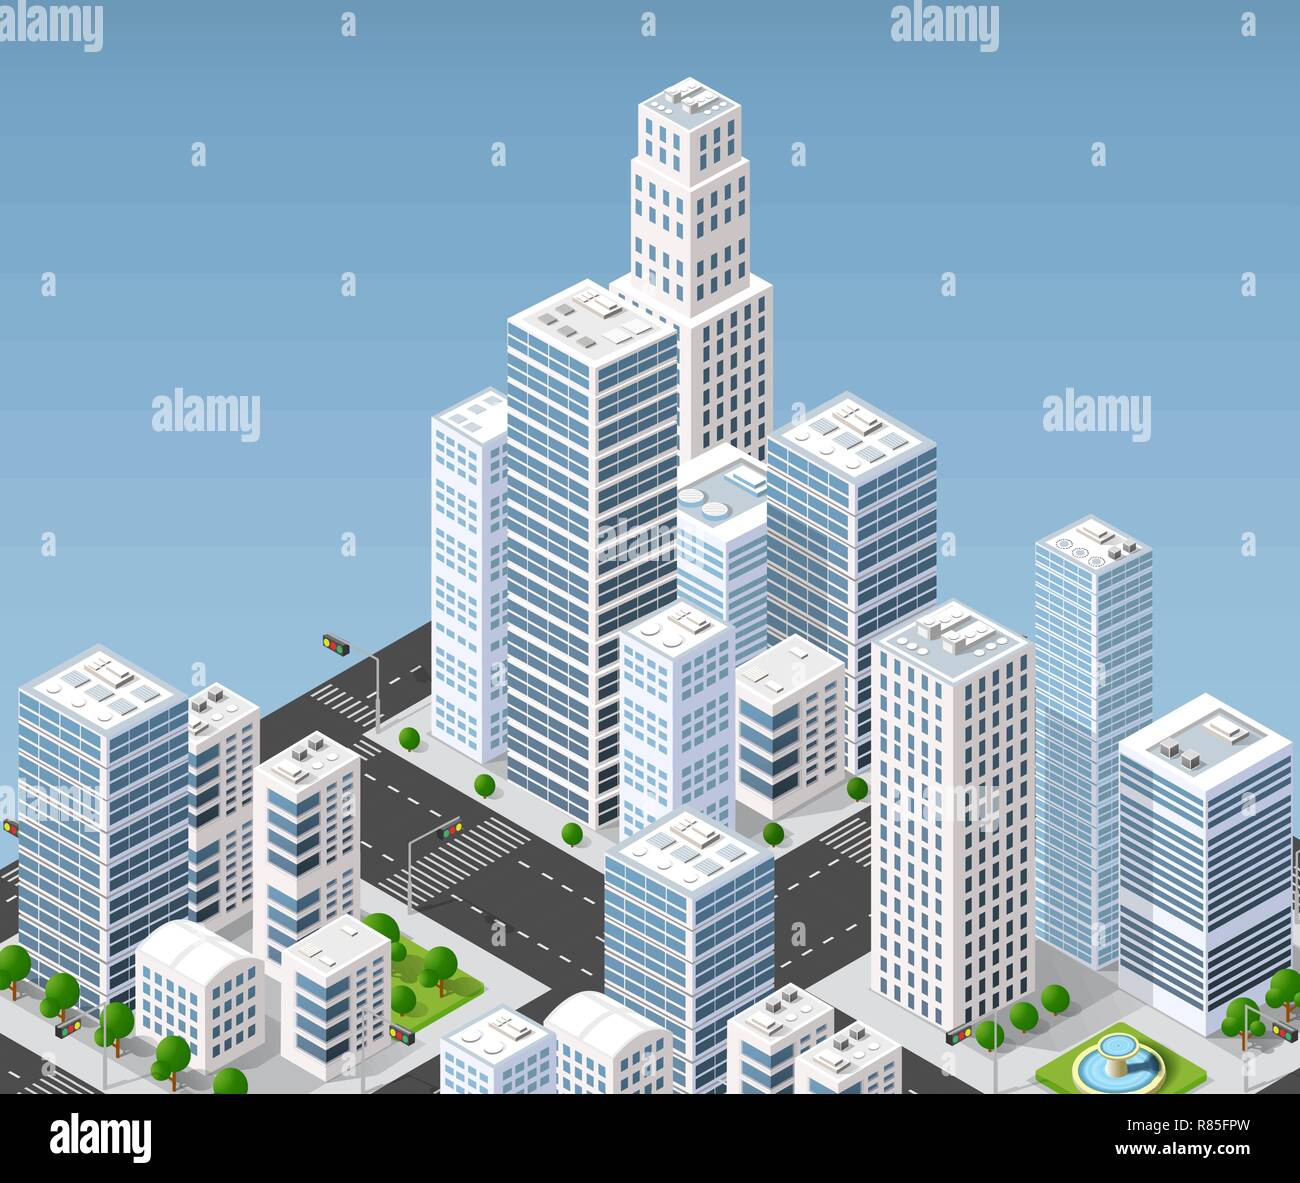 Illustration 3D isométrique de la zone urbaine de la ville avec beaucoup de maisons et gratte-ciel, les rues, les arbres et les véhicules Illustration de Vecteur